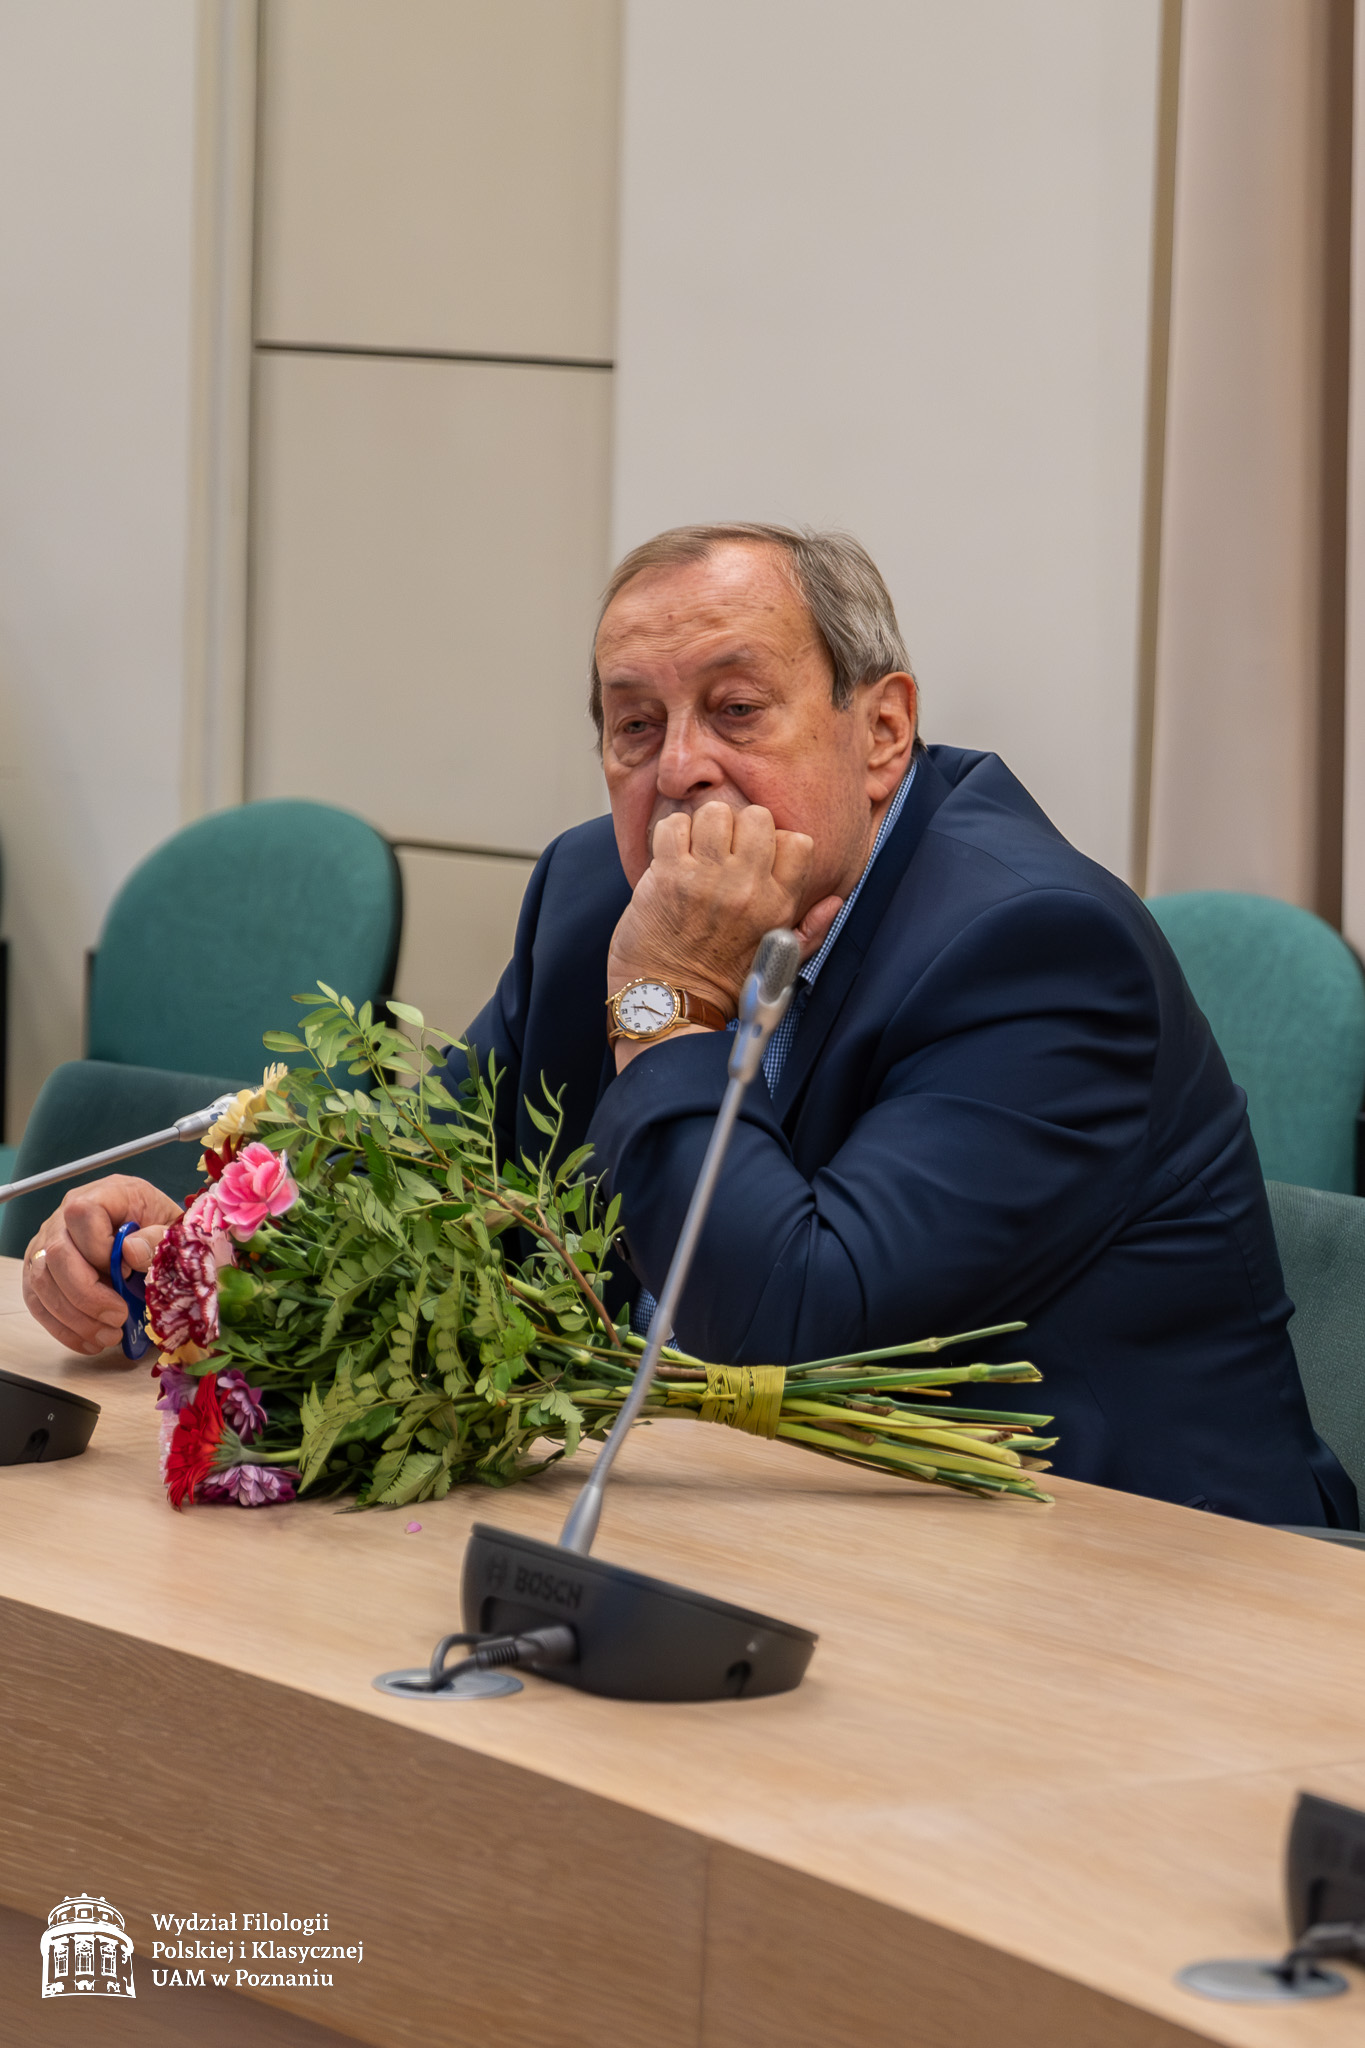 Starszy mężczyzna w garniturze siedzi wśród gości w Salonie Mickiewicza pod Kopułą, na stole przed nim leży bukiet kwiatów.